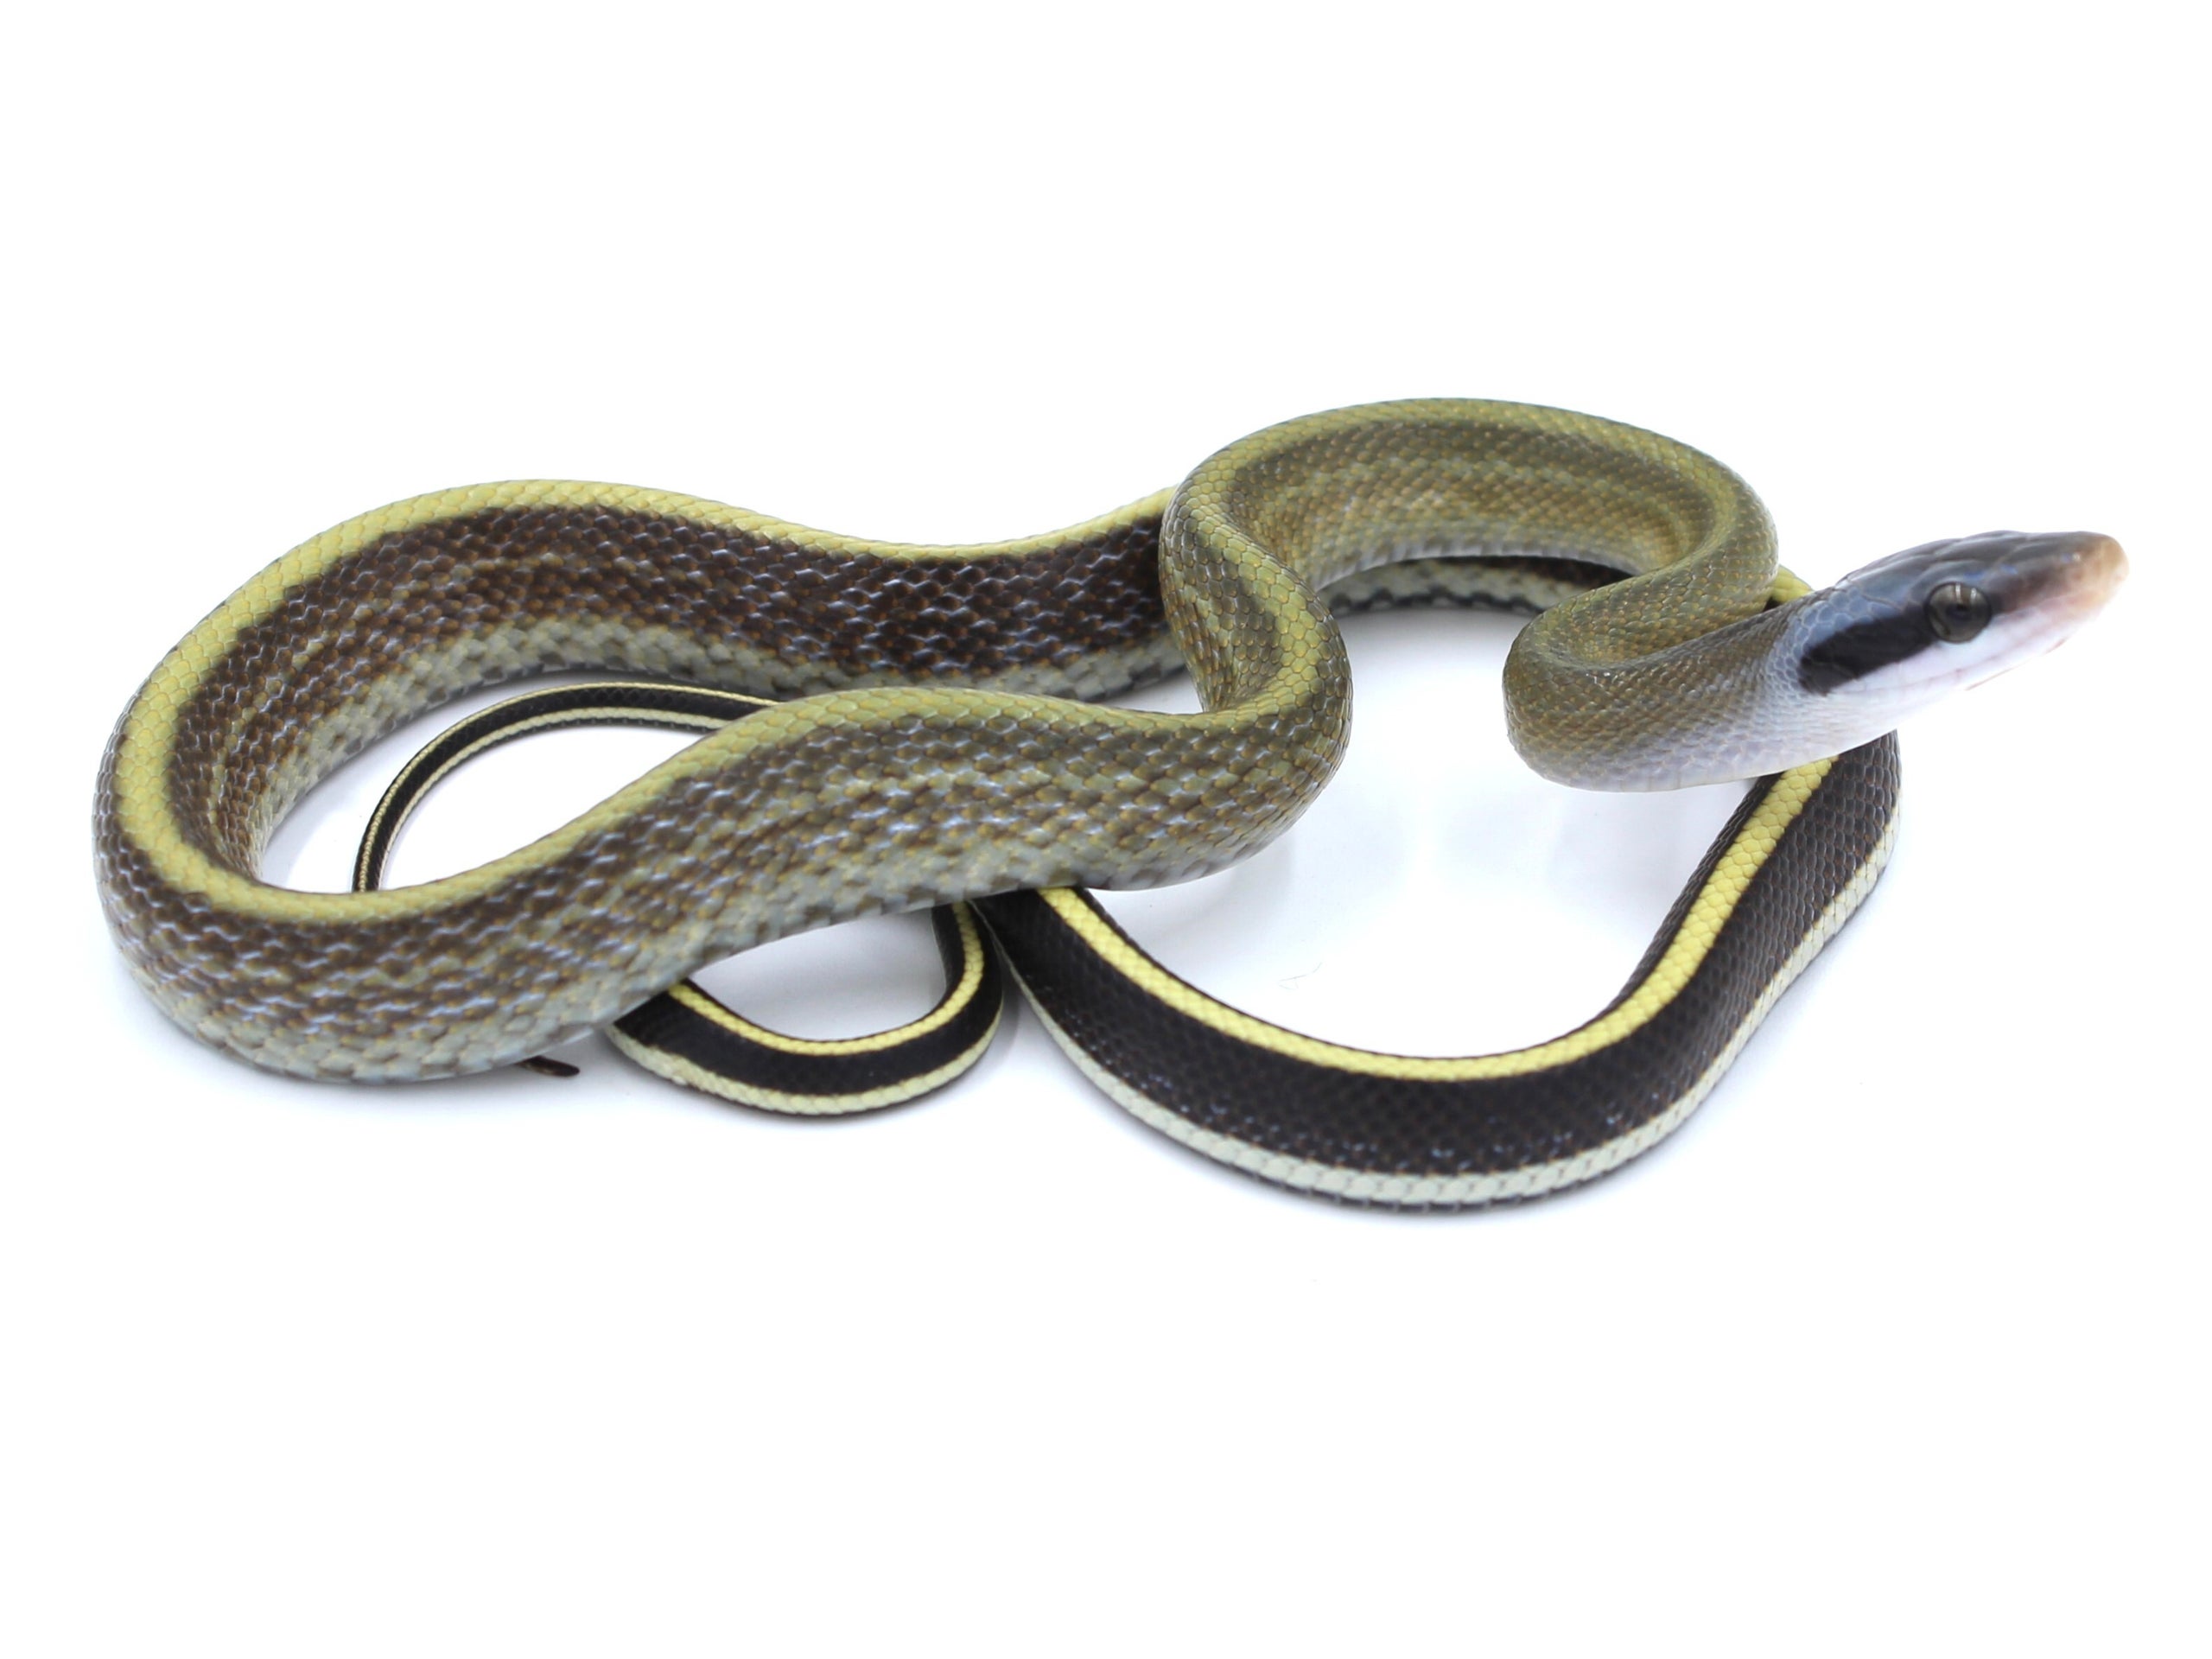 '23 Cave Dwelling Rat Snake (Ridleyi) Male | Metazotics